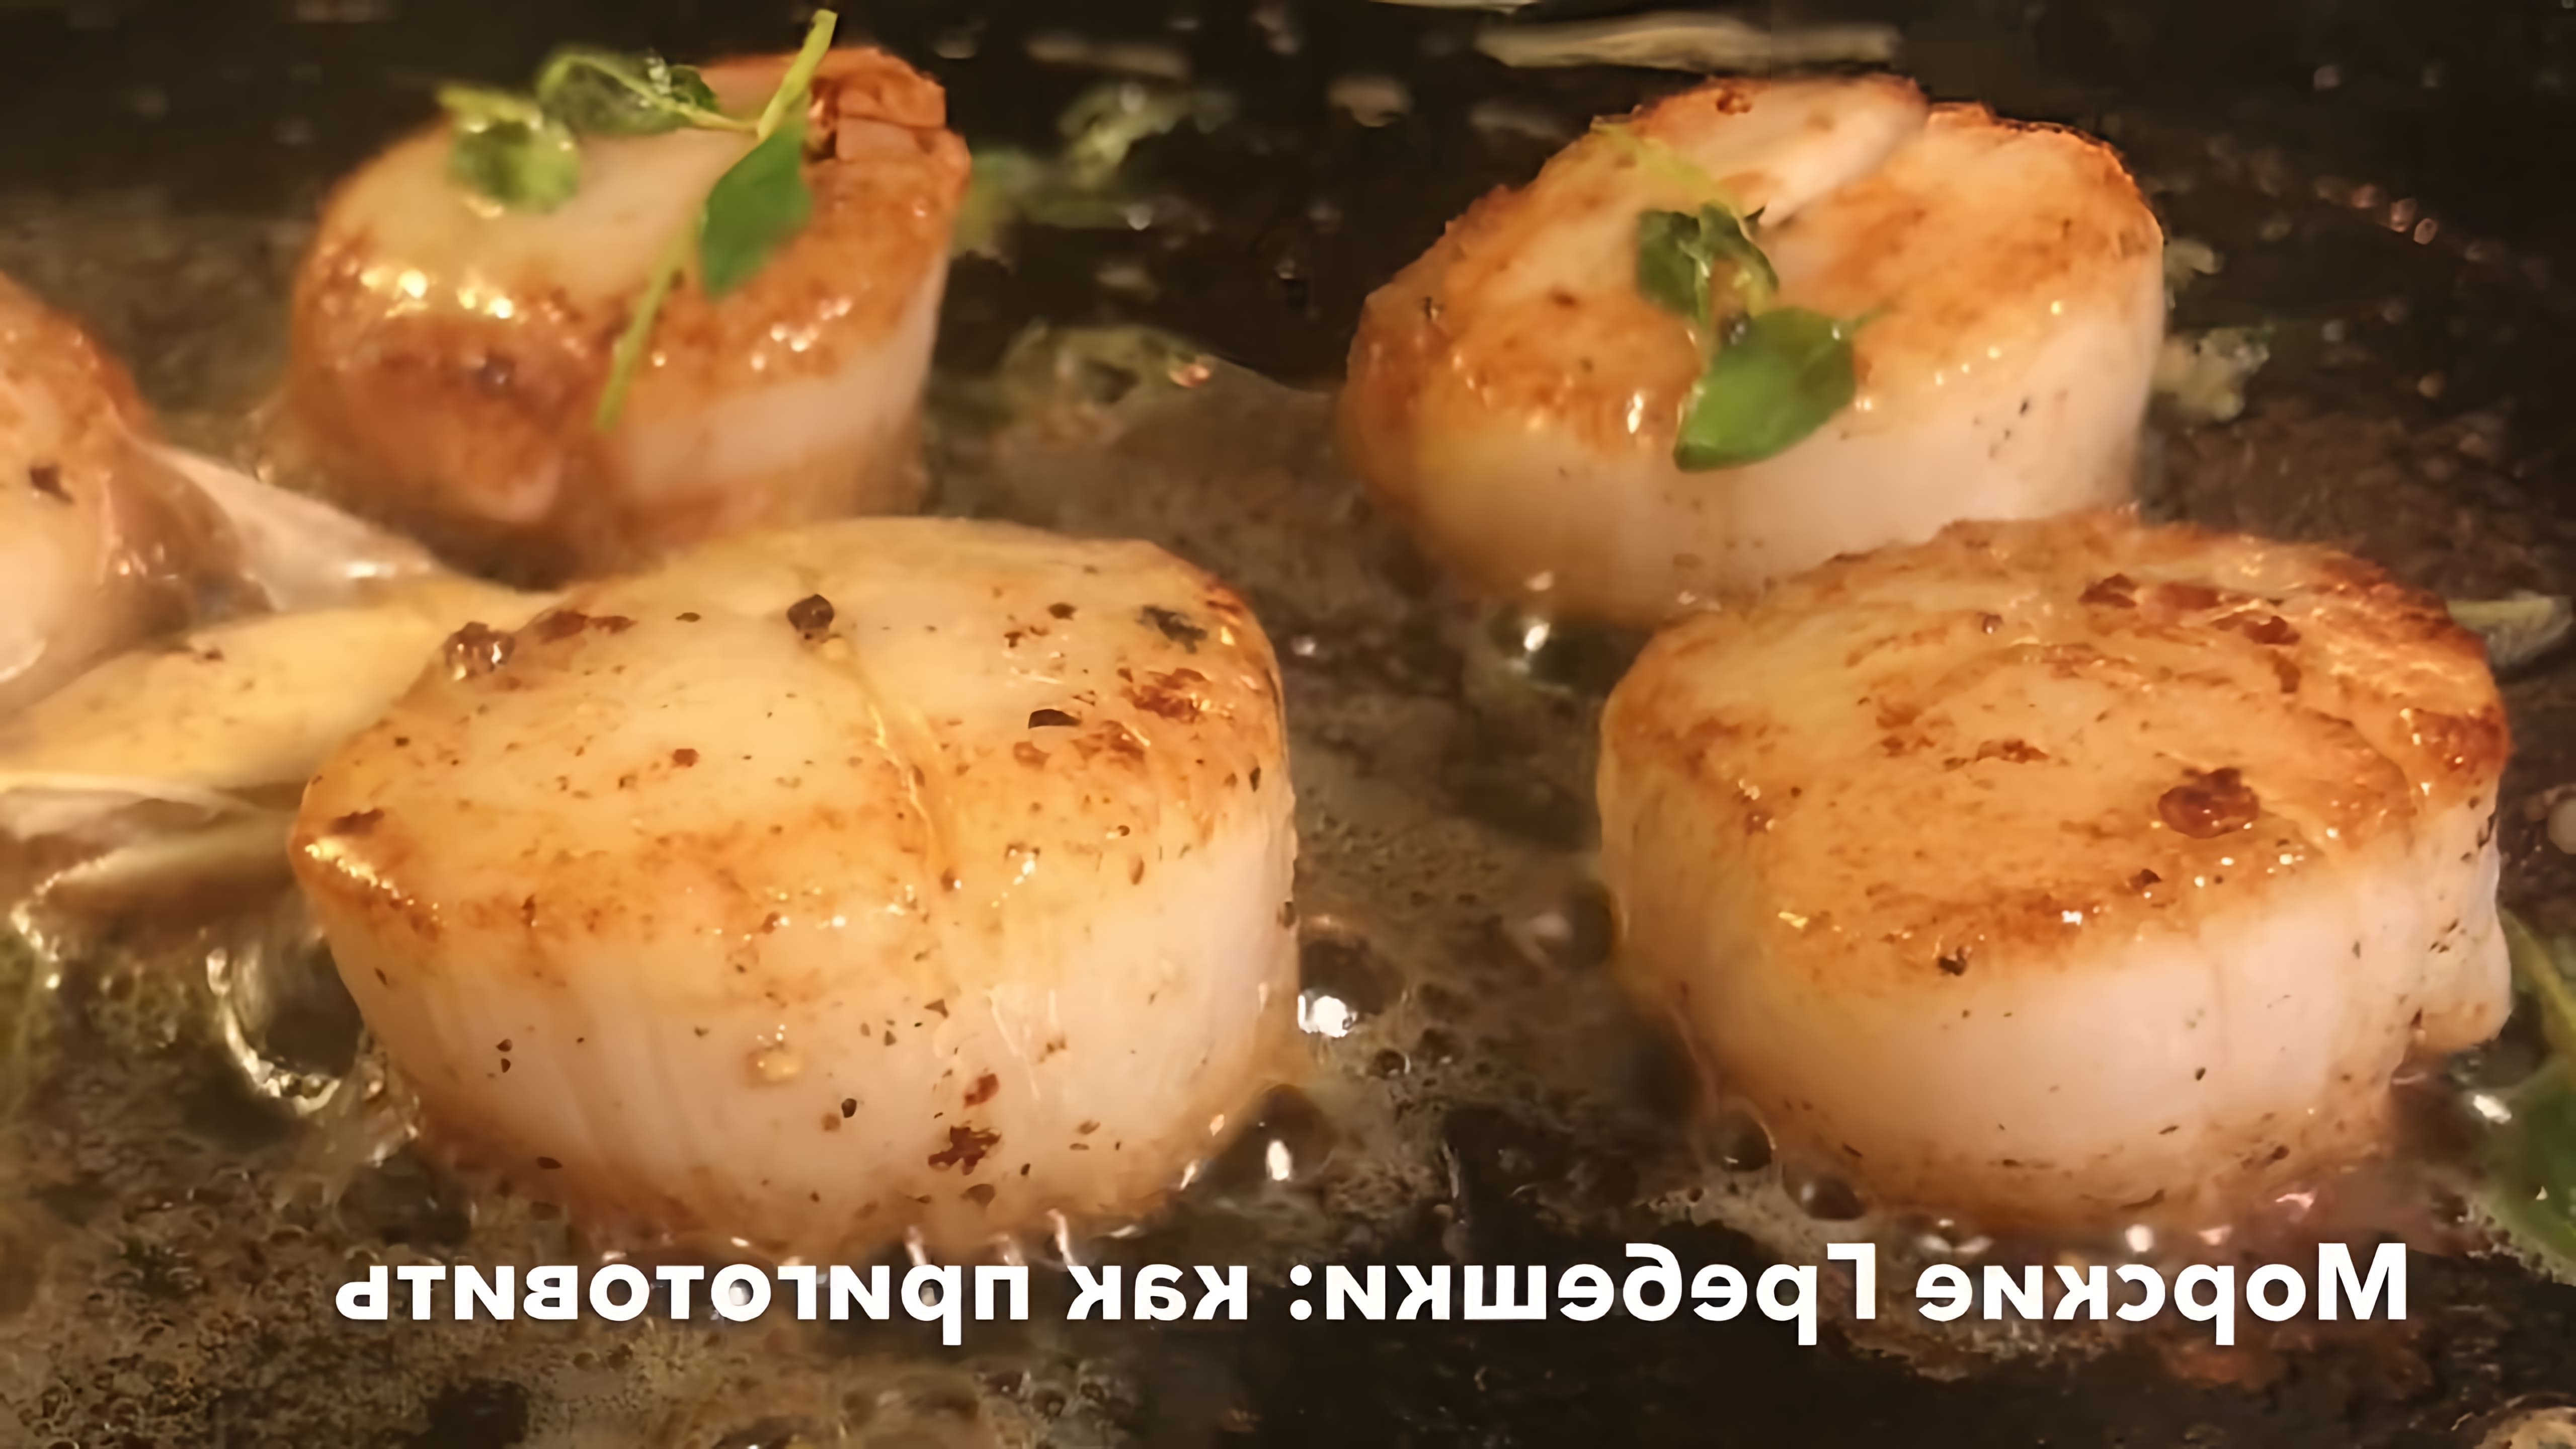 В этом видео демонстрируется быстрый и простой способ приготовления морских гребешков